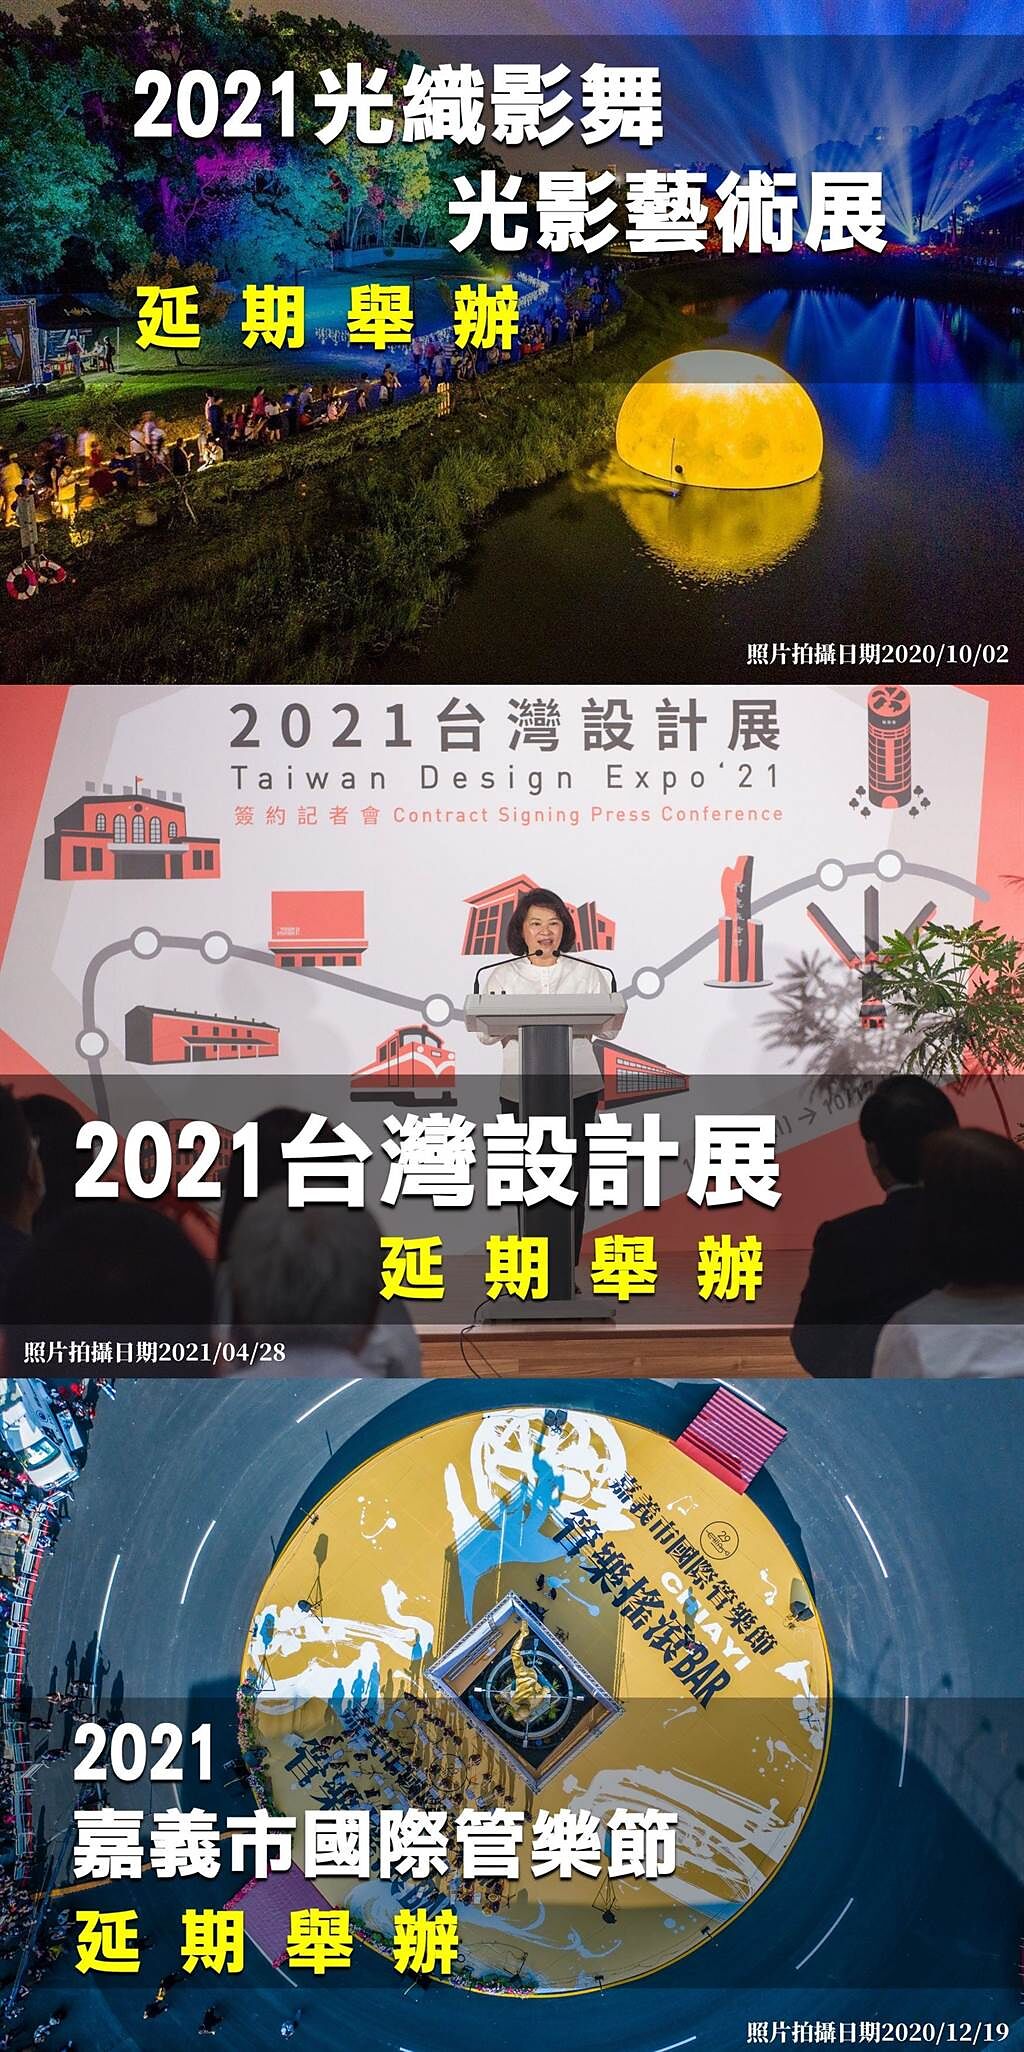 「光織影舞」、「2021台灣設計展」、「國際管樂節」等3大活動都延期舉辦。（嘉義市政府提供）